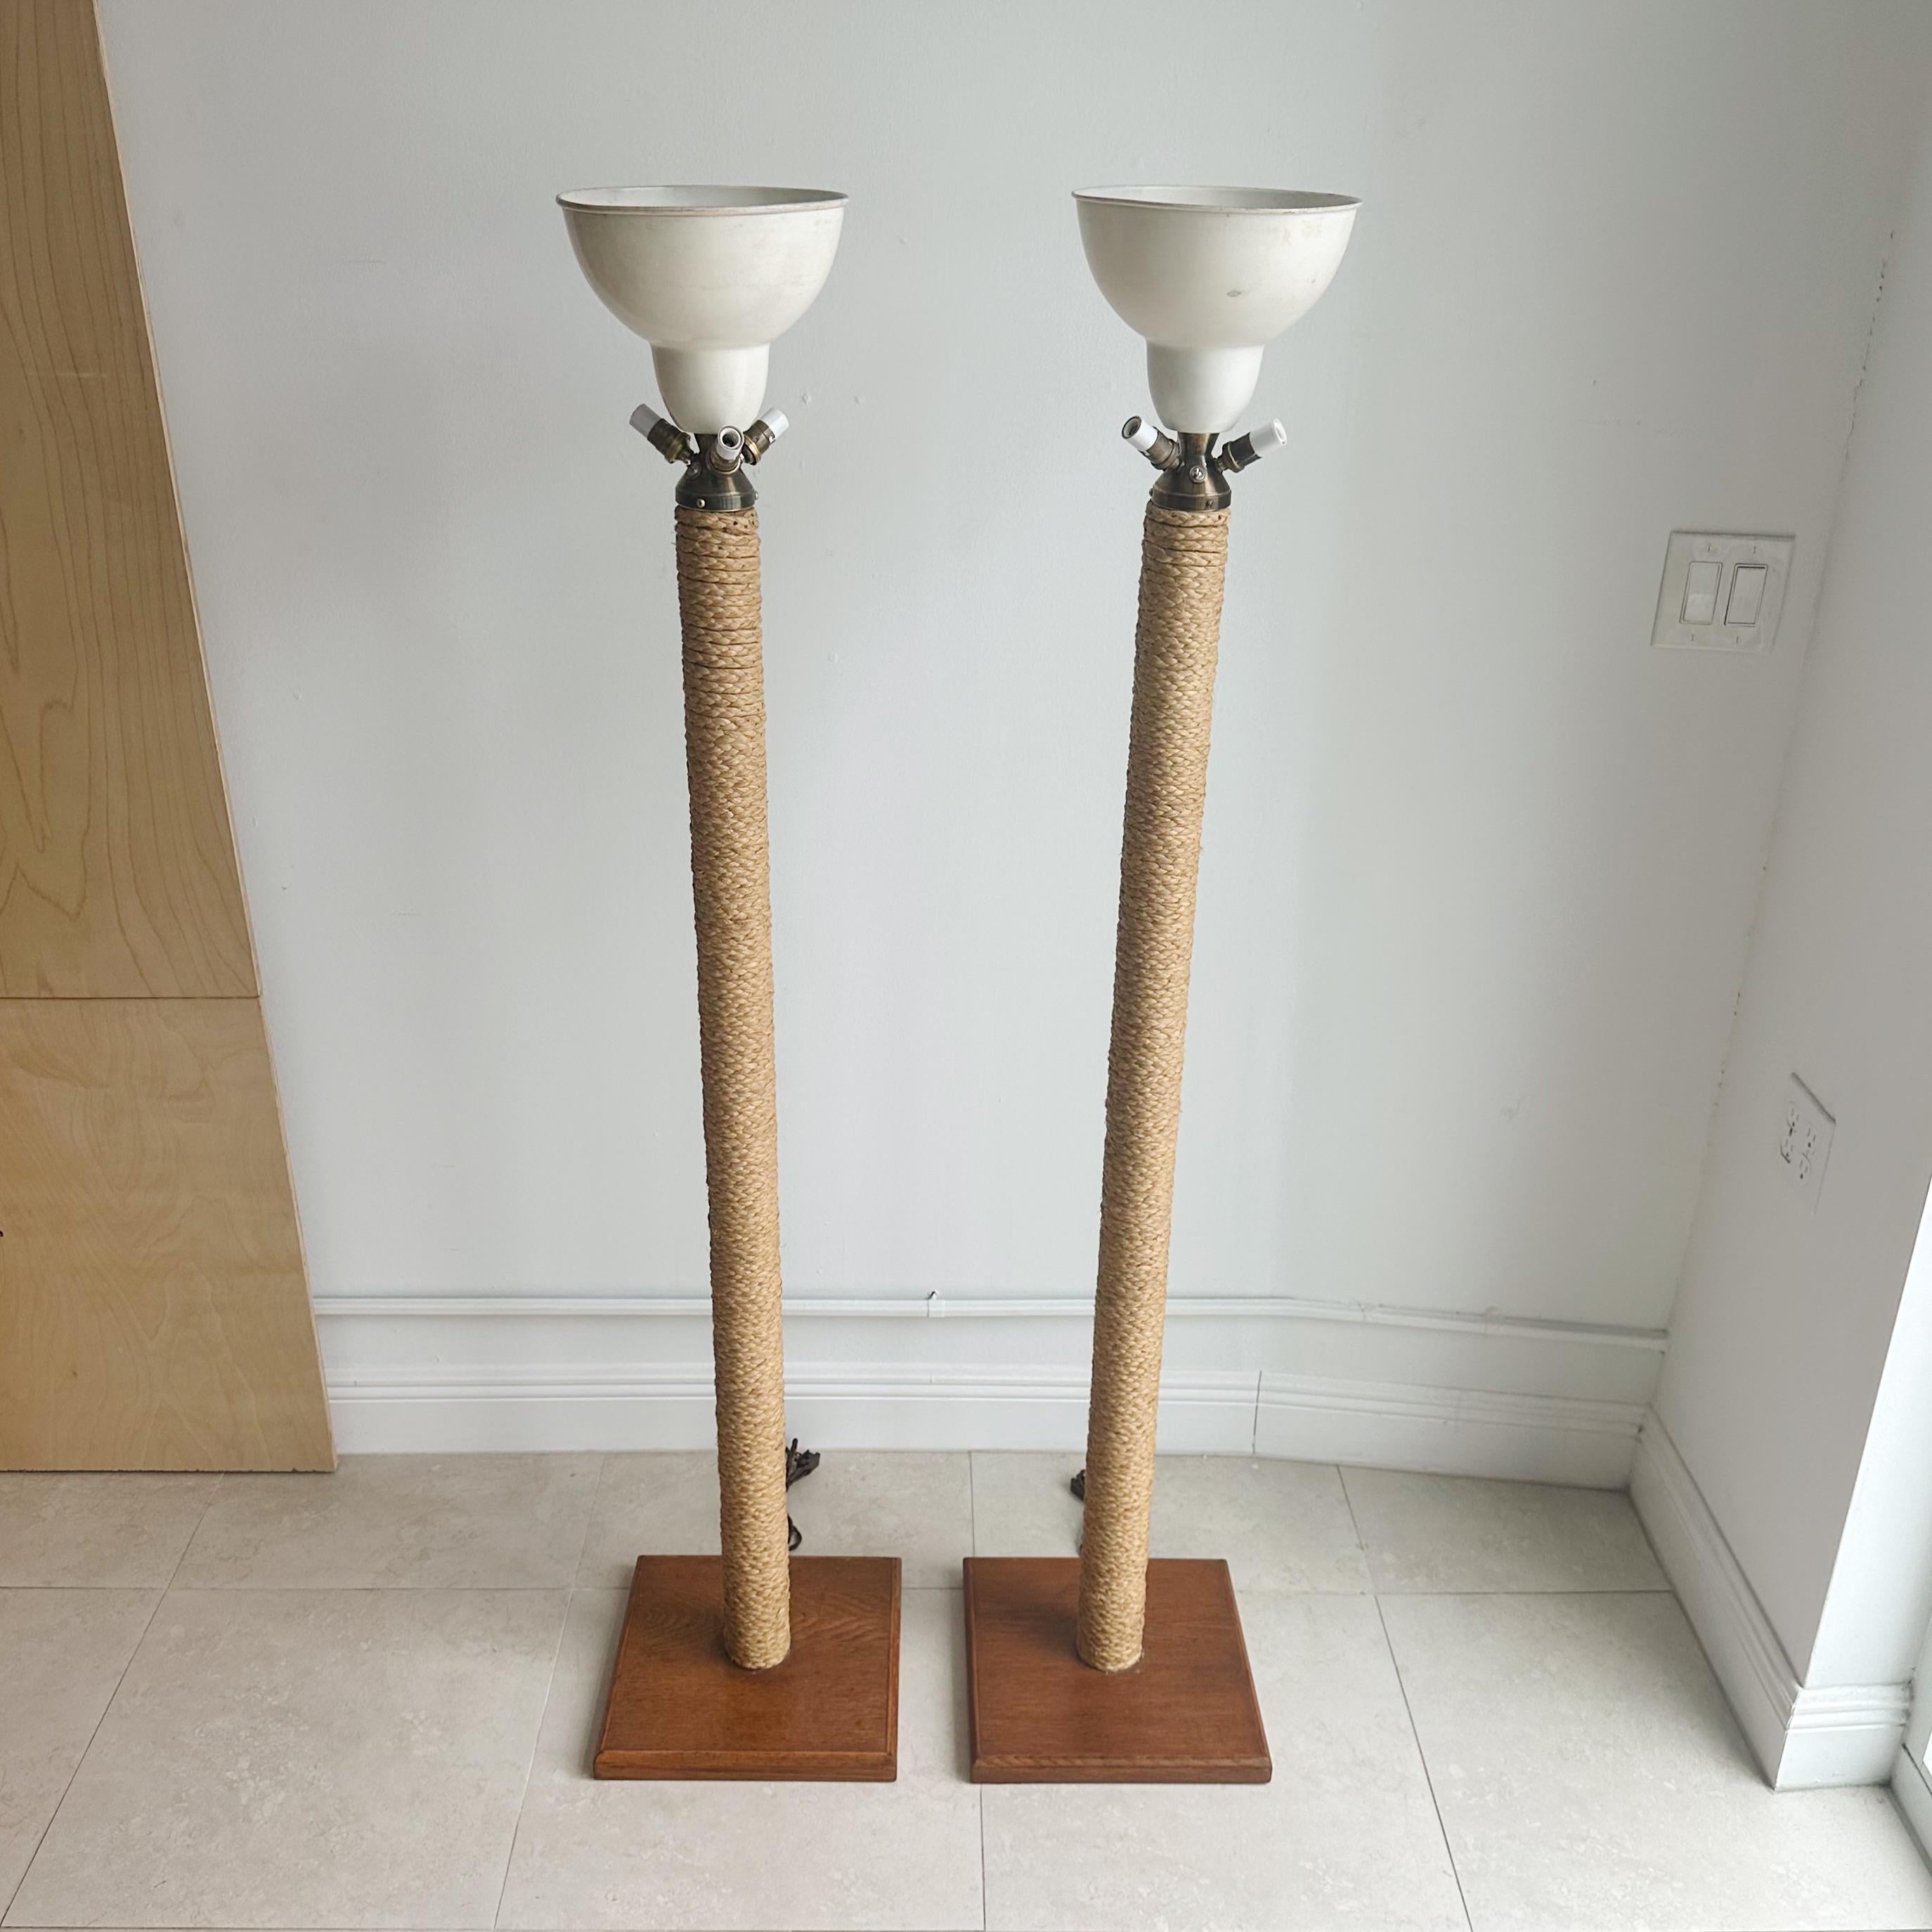 Seltener Vintage Fund: Ein Paar Adrien Audoux und Frida Minet Seil-Stehlampen aus Frankreich, CIRCA 1950er Jahre

Die Besonderheit der Lampen liegt in der geschickten Verwendung von Seilen, die um den Holzrahmen gewickelt sind und einen rustikalen